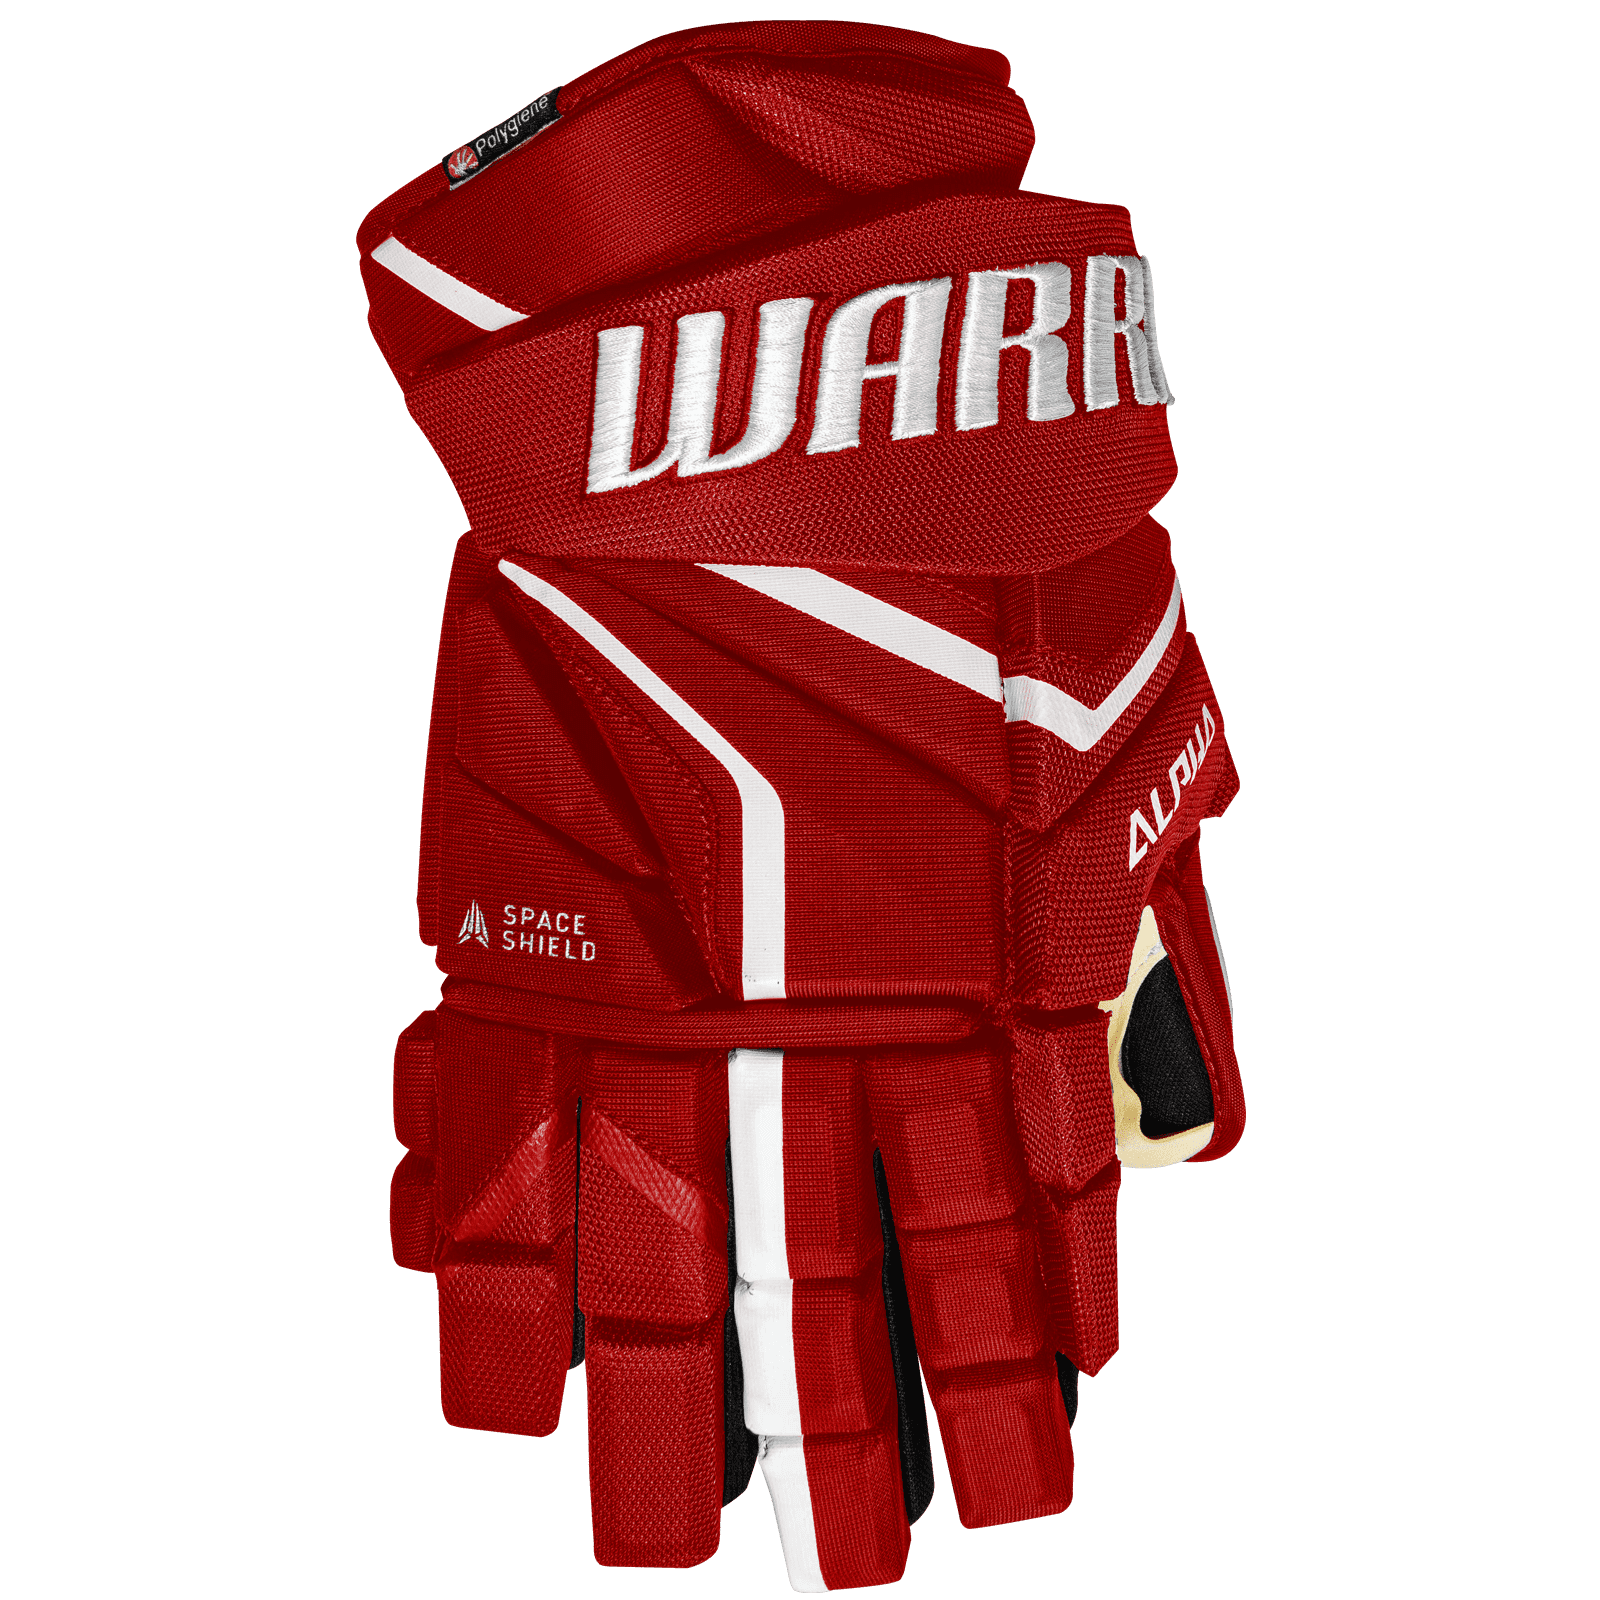 Handschuhe Warrior Alpha LX2 SR 